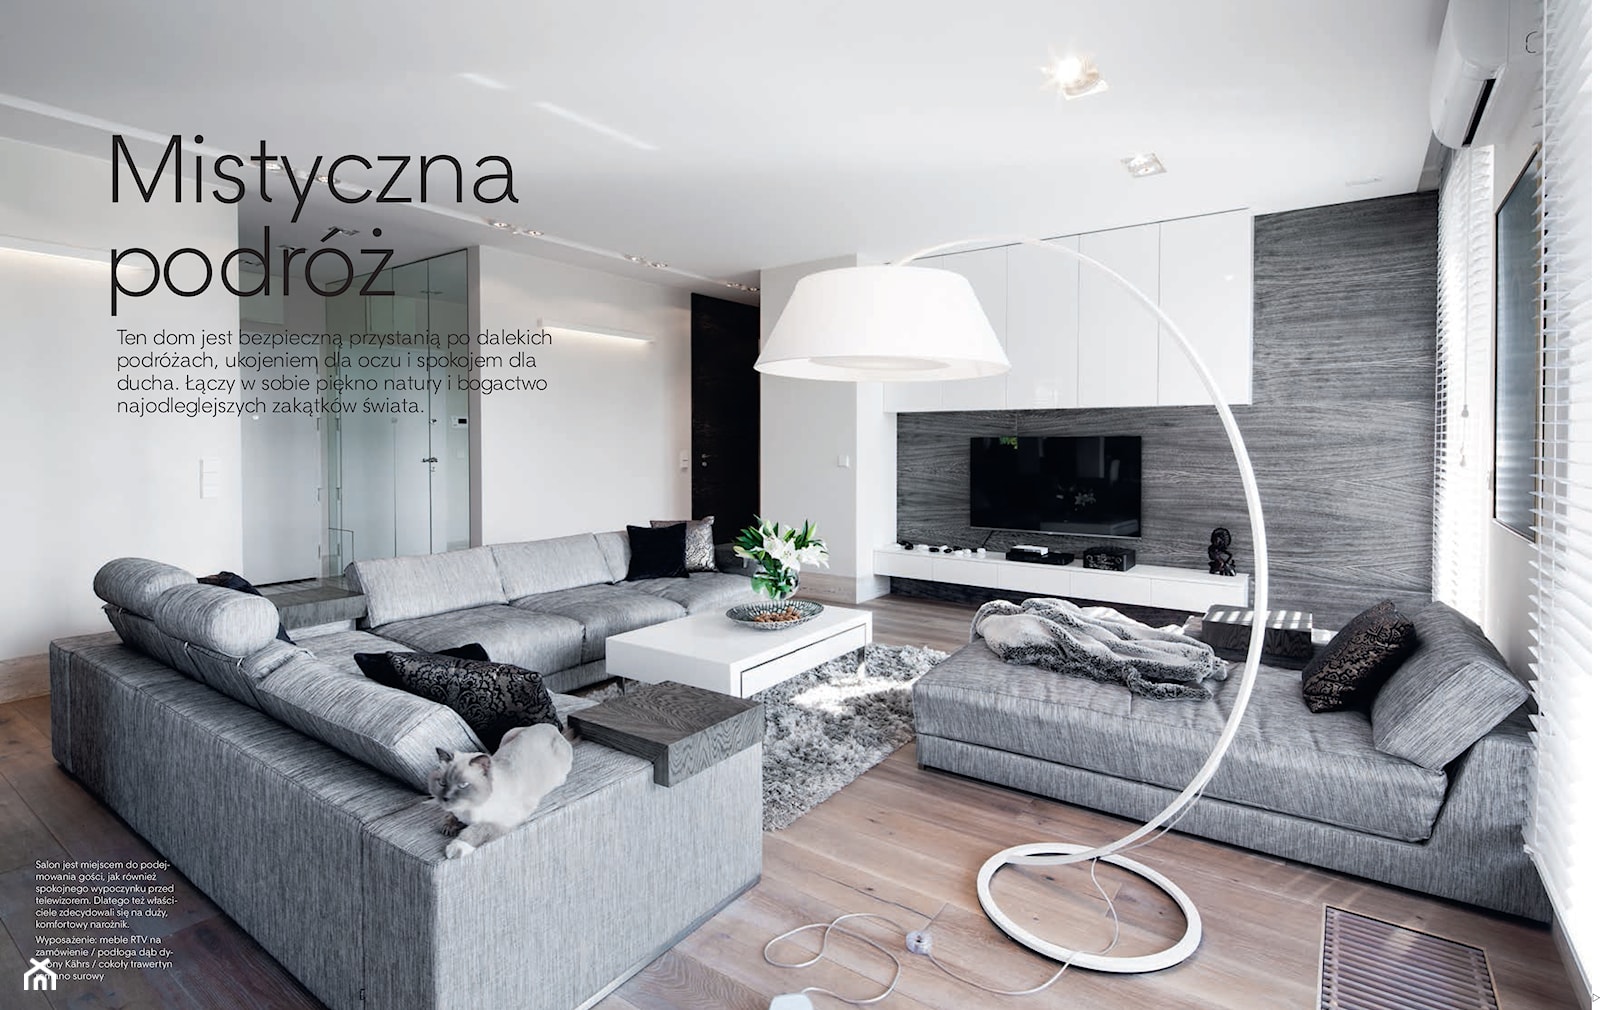 MISTYCZNA PODRÓŻ - PUBLIKACJA W "DOBRZE MIESZKAJ" - Salon, styl minimalistyczny - zdjęcie od Ludwinowska Studio Architektury - Homebook